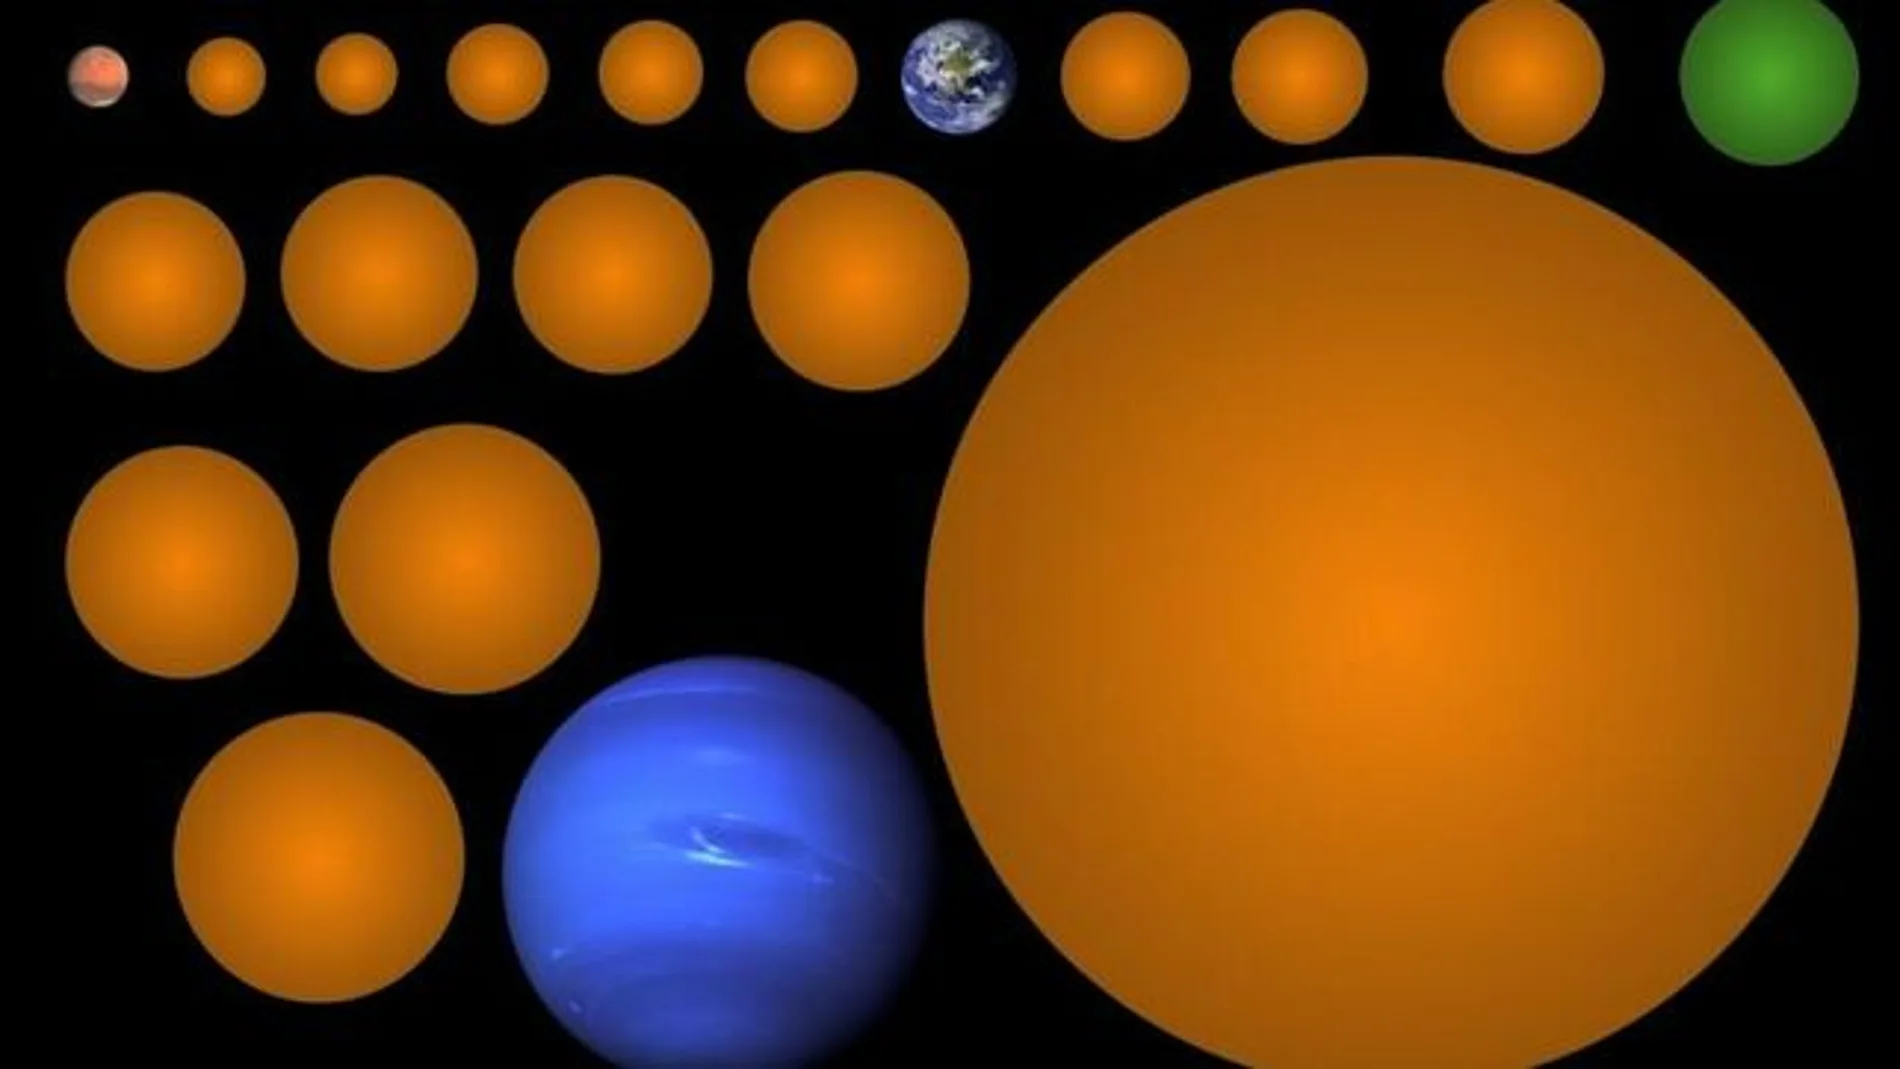 Tamaños de los 17 nuevos candidatos a planetas, en comparación con Marte, la Tierra y Neptuno